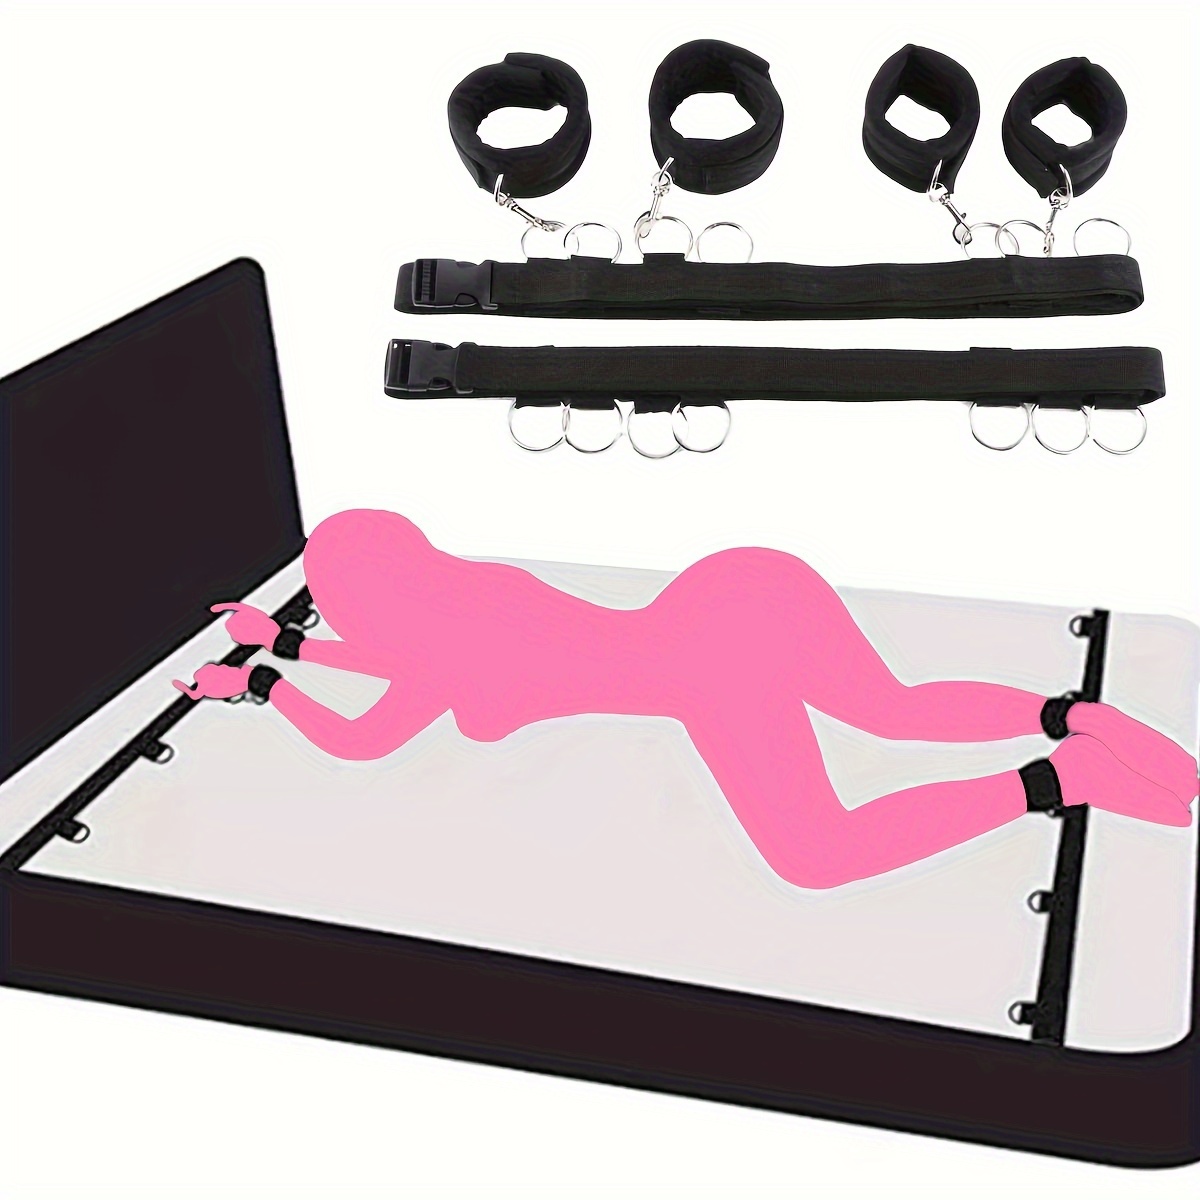 Bdsm erótico Tie Gear Kit cama esposas tobillos para sexo mujer desnuda  pornografía adultos juego sexual juguetes sexuales para mujer Banban